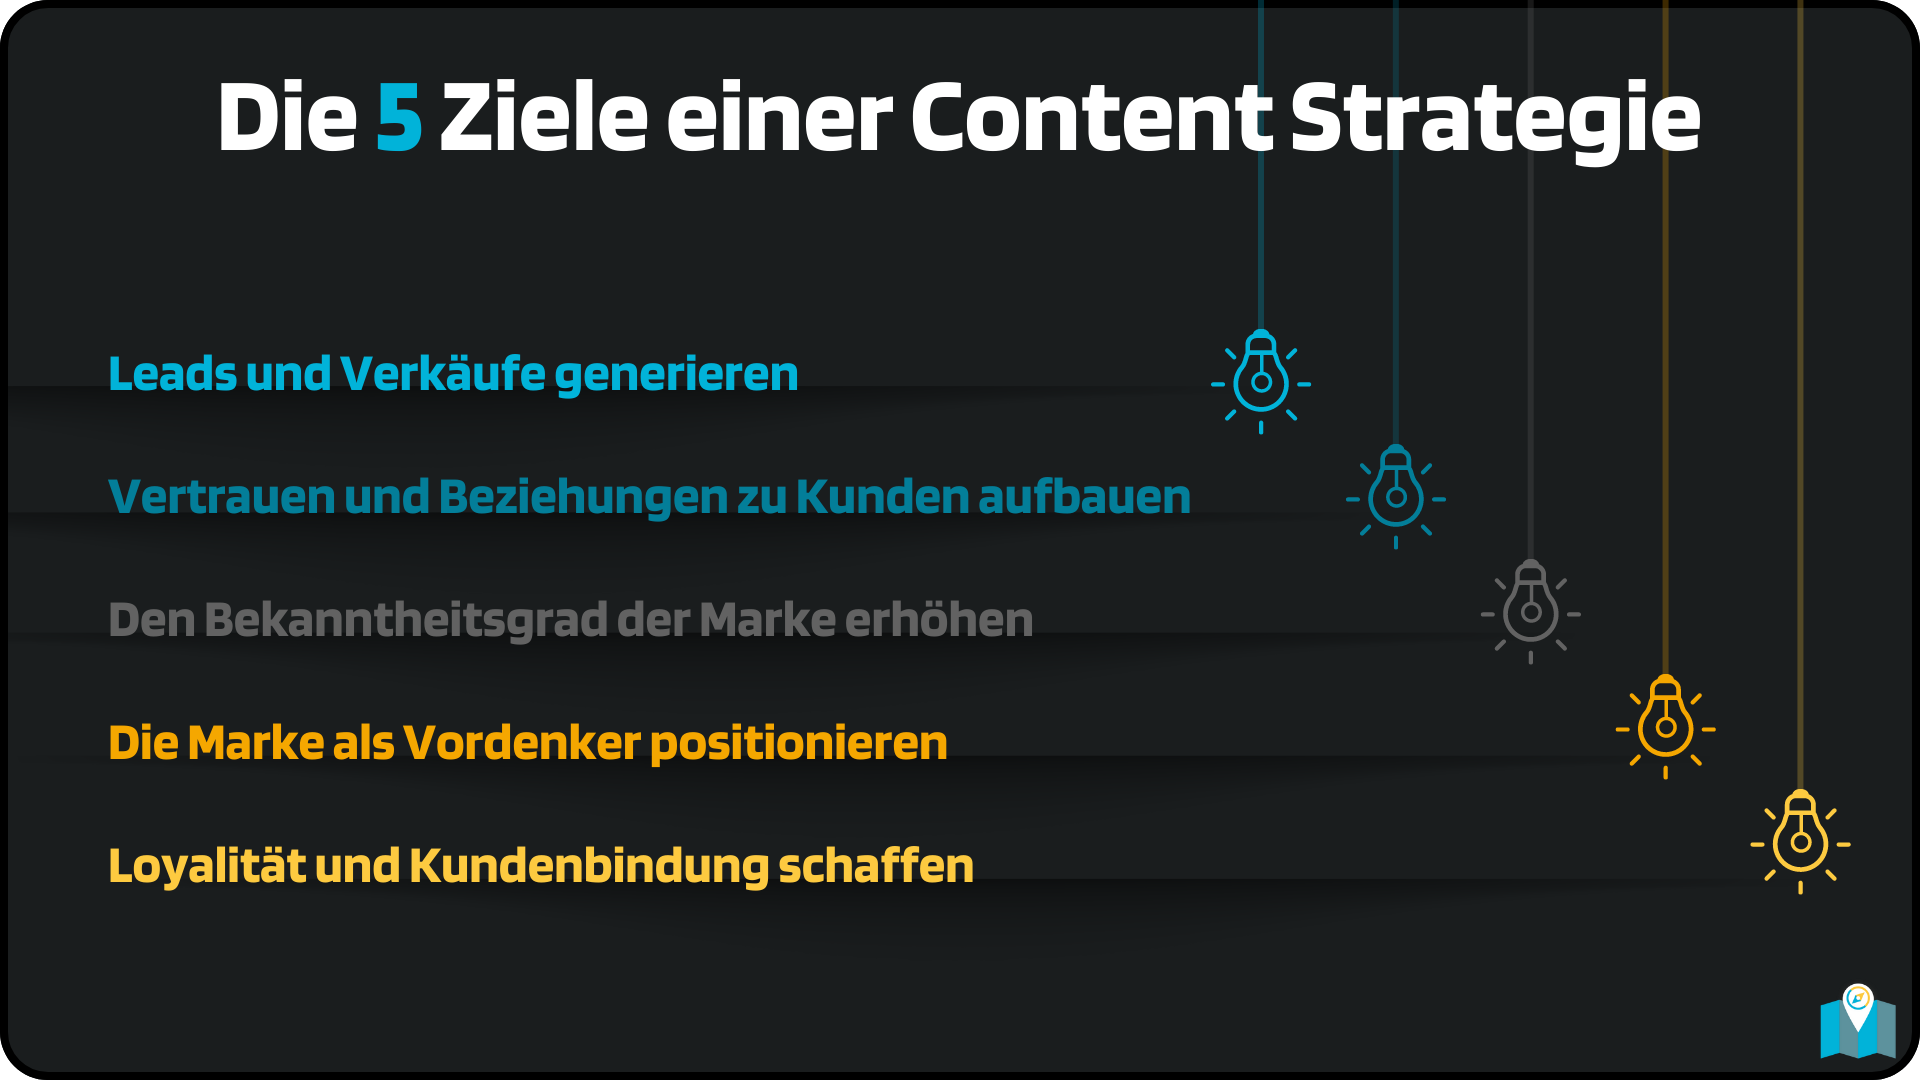 Die 5 Ziele einer Content Strategie